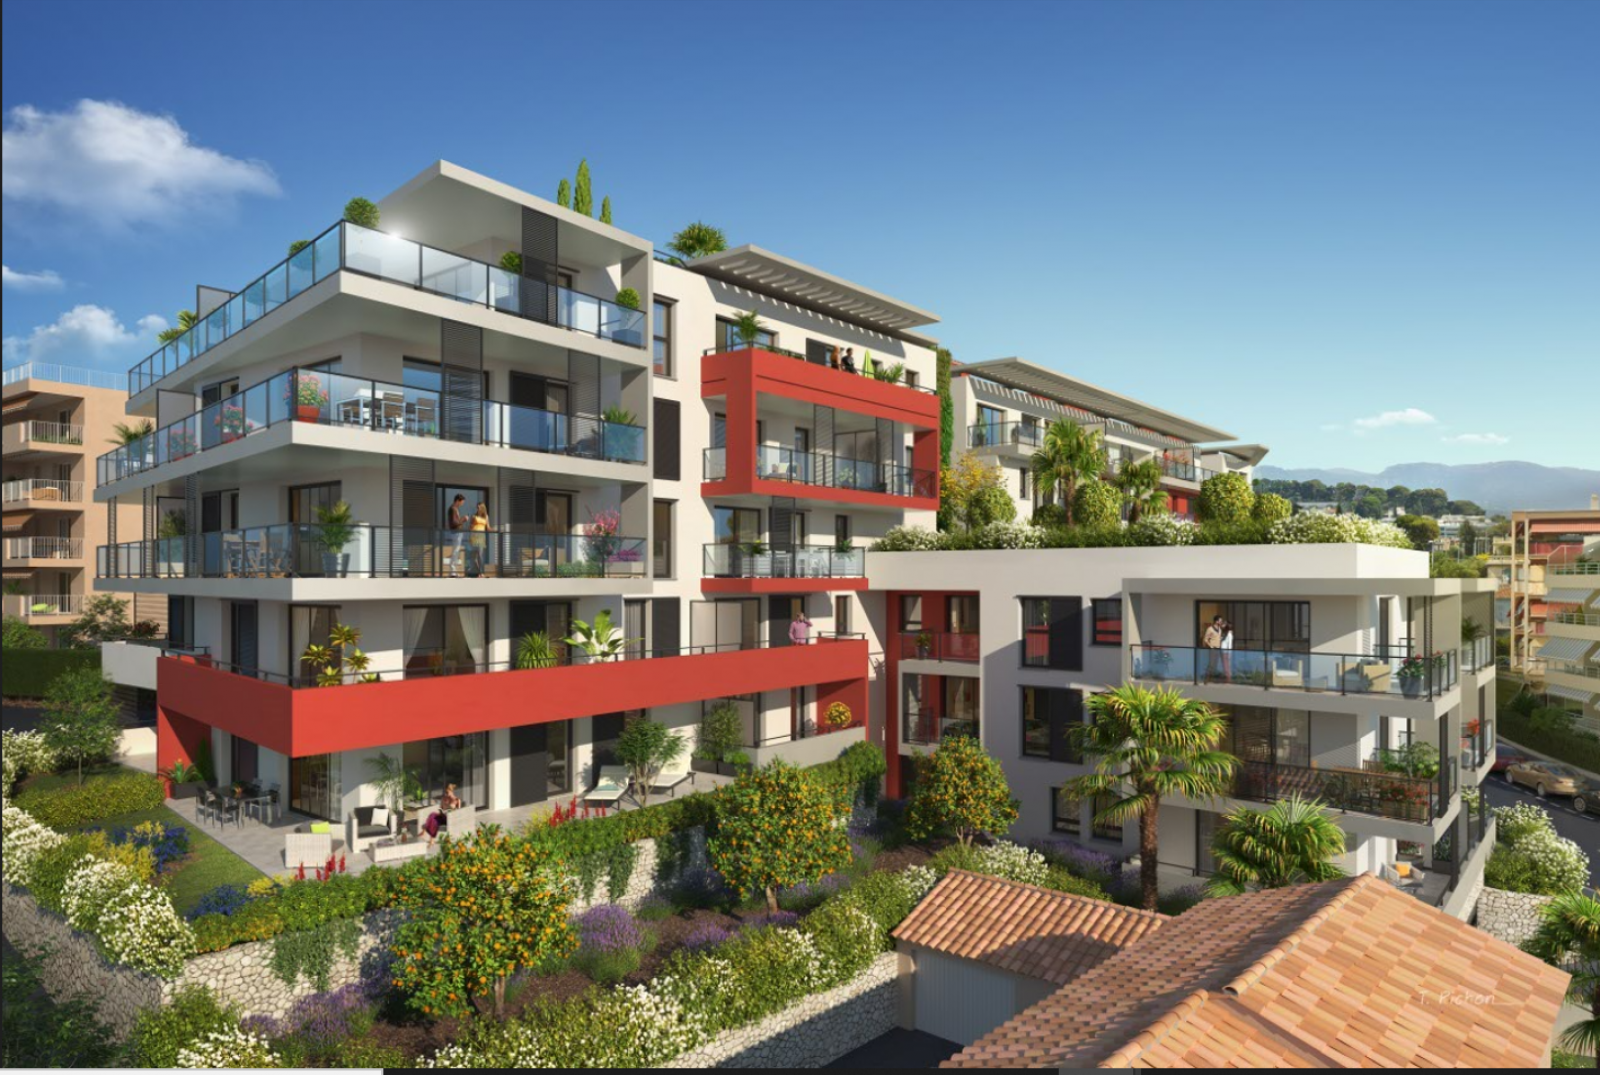 Projet immobilier résidentiel MARINEO à Saint Laurent du Var dans les Alpes Maritimes  